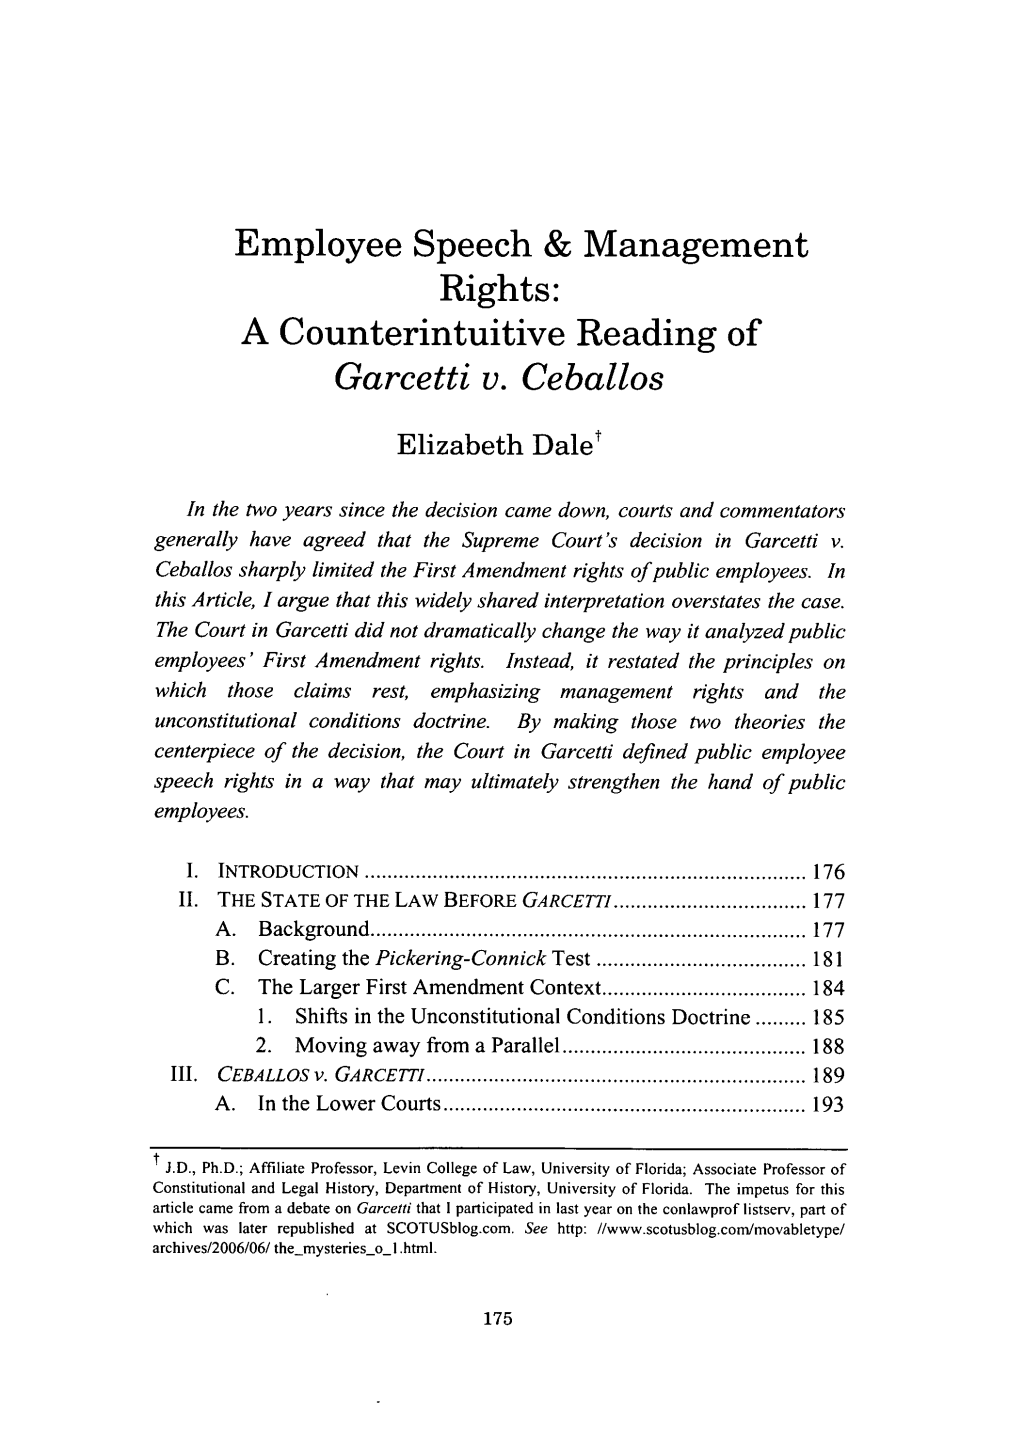 Employee Speech & Management Rights